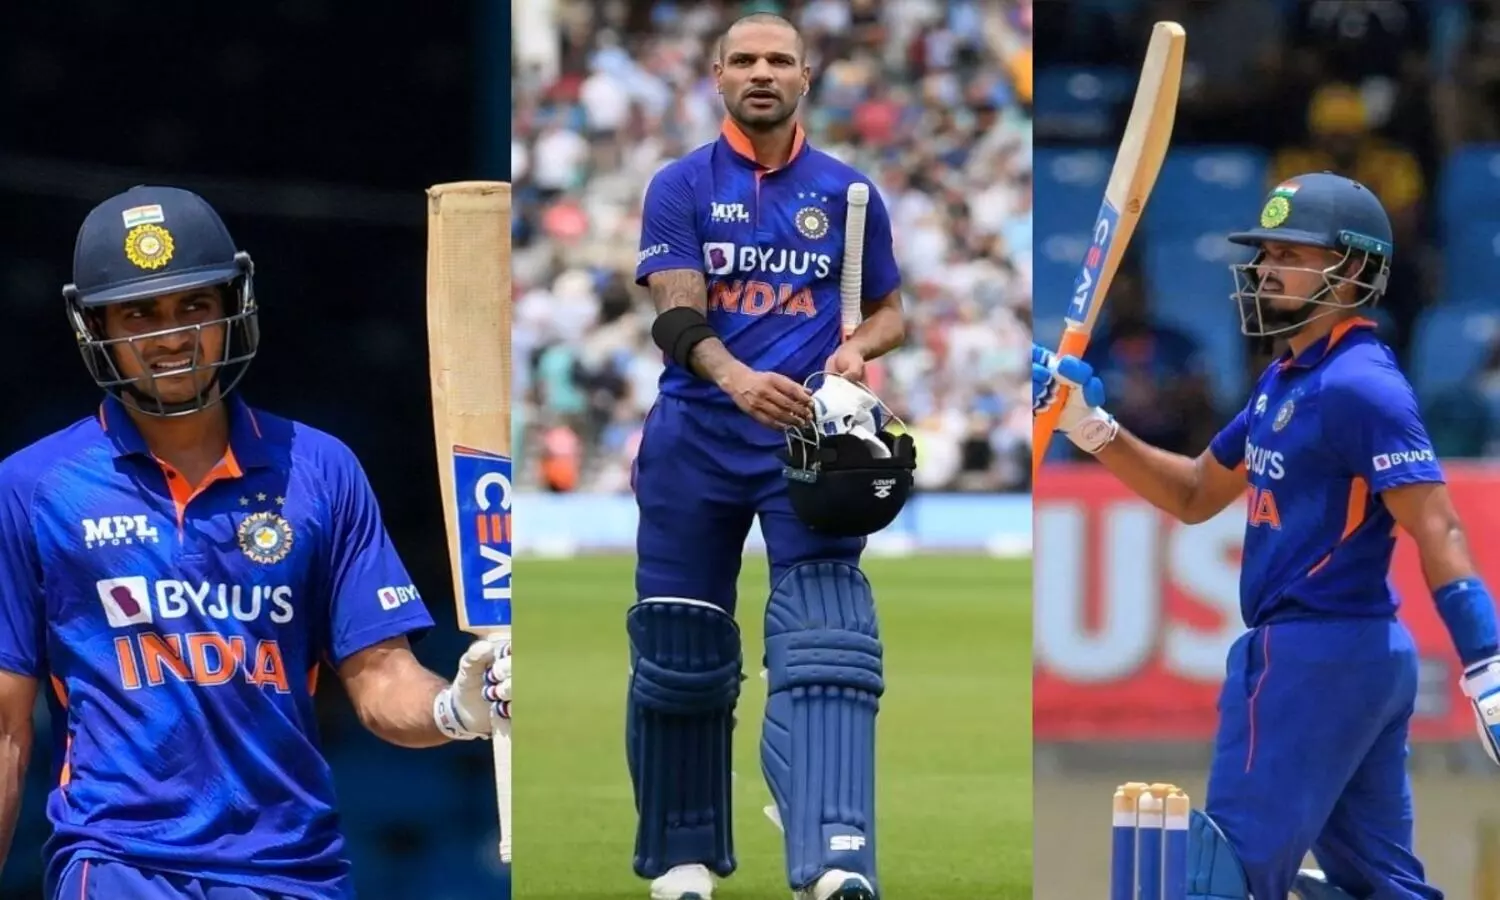 IND vs WI ODI Series: वेस्टइंडीज के खिलाफ क्लीन स्वीप करने में इन तीन खिलाड़ियों ने निभाई अहम भूमिका